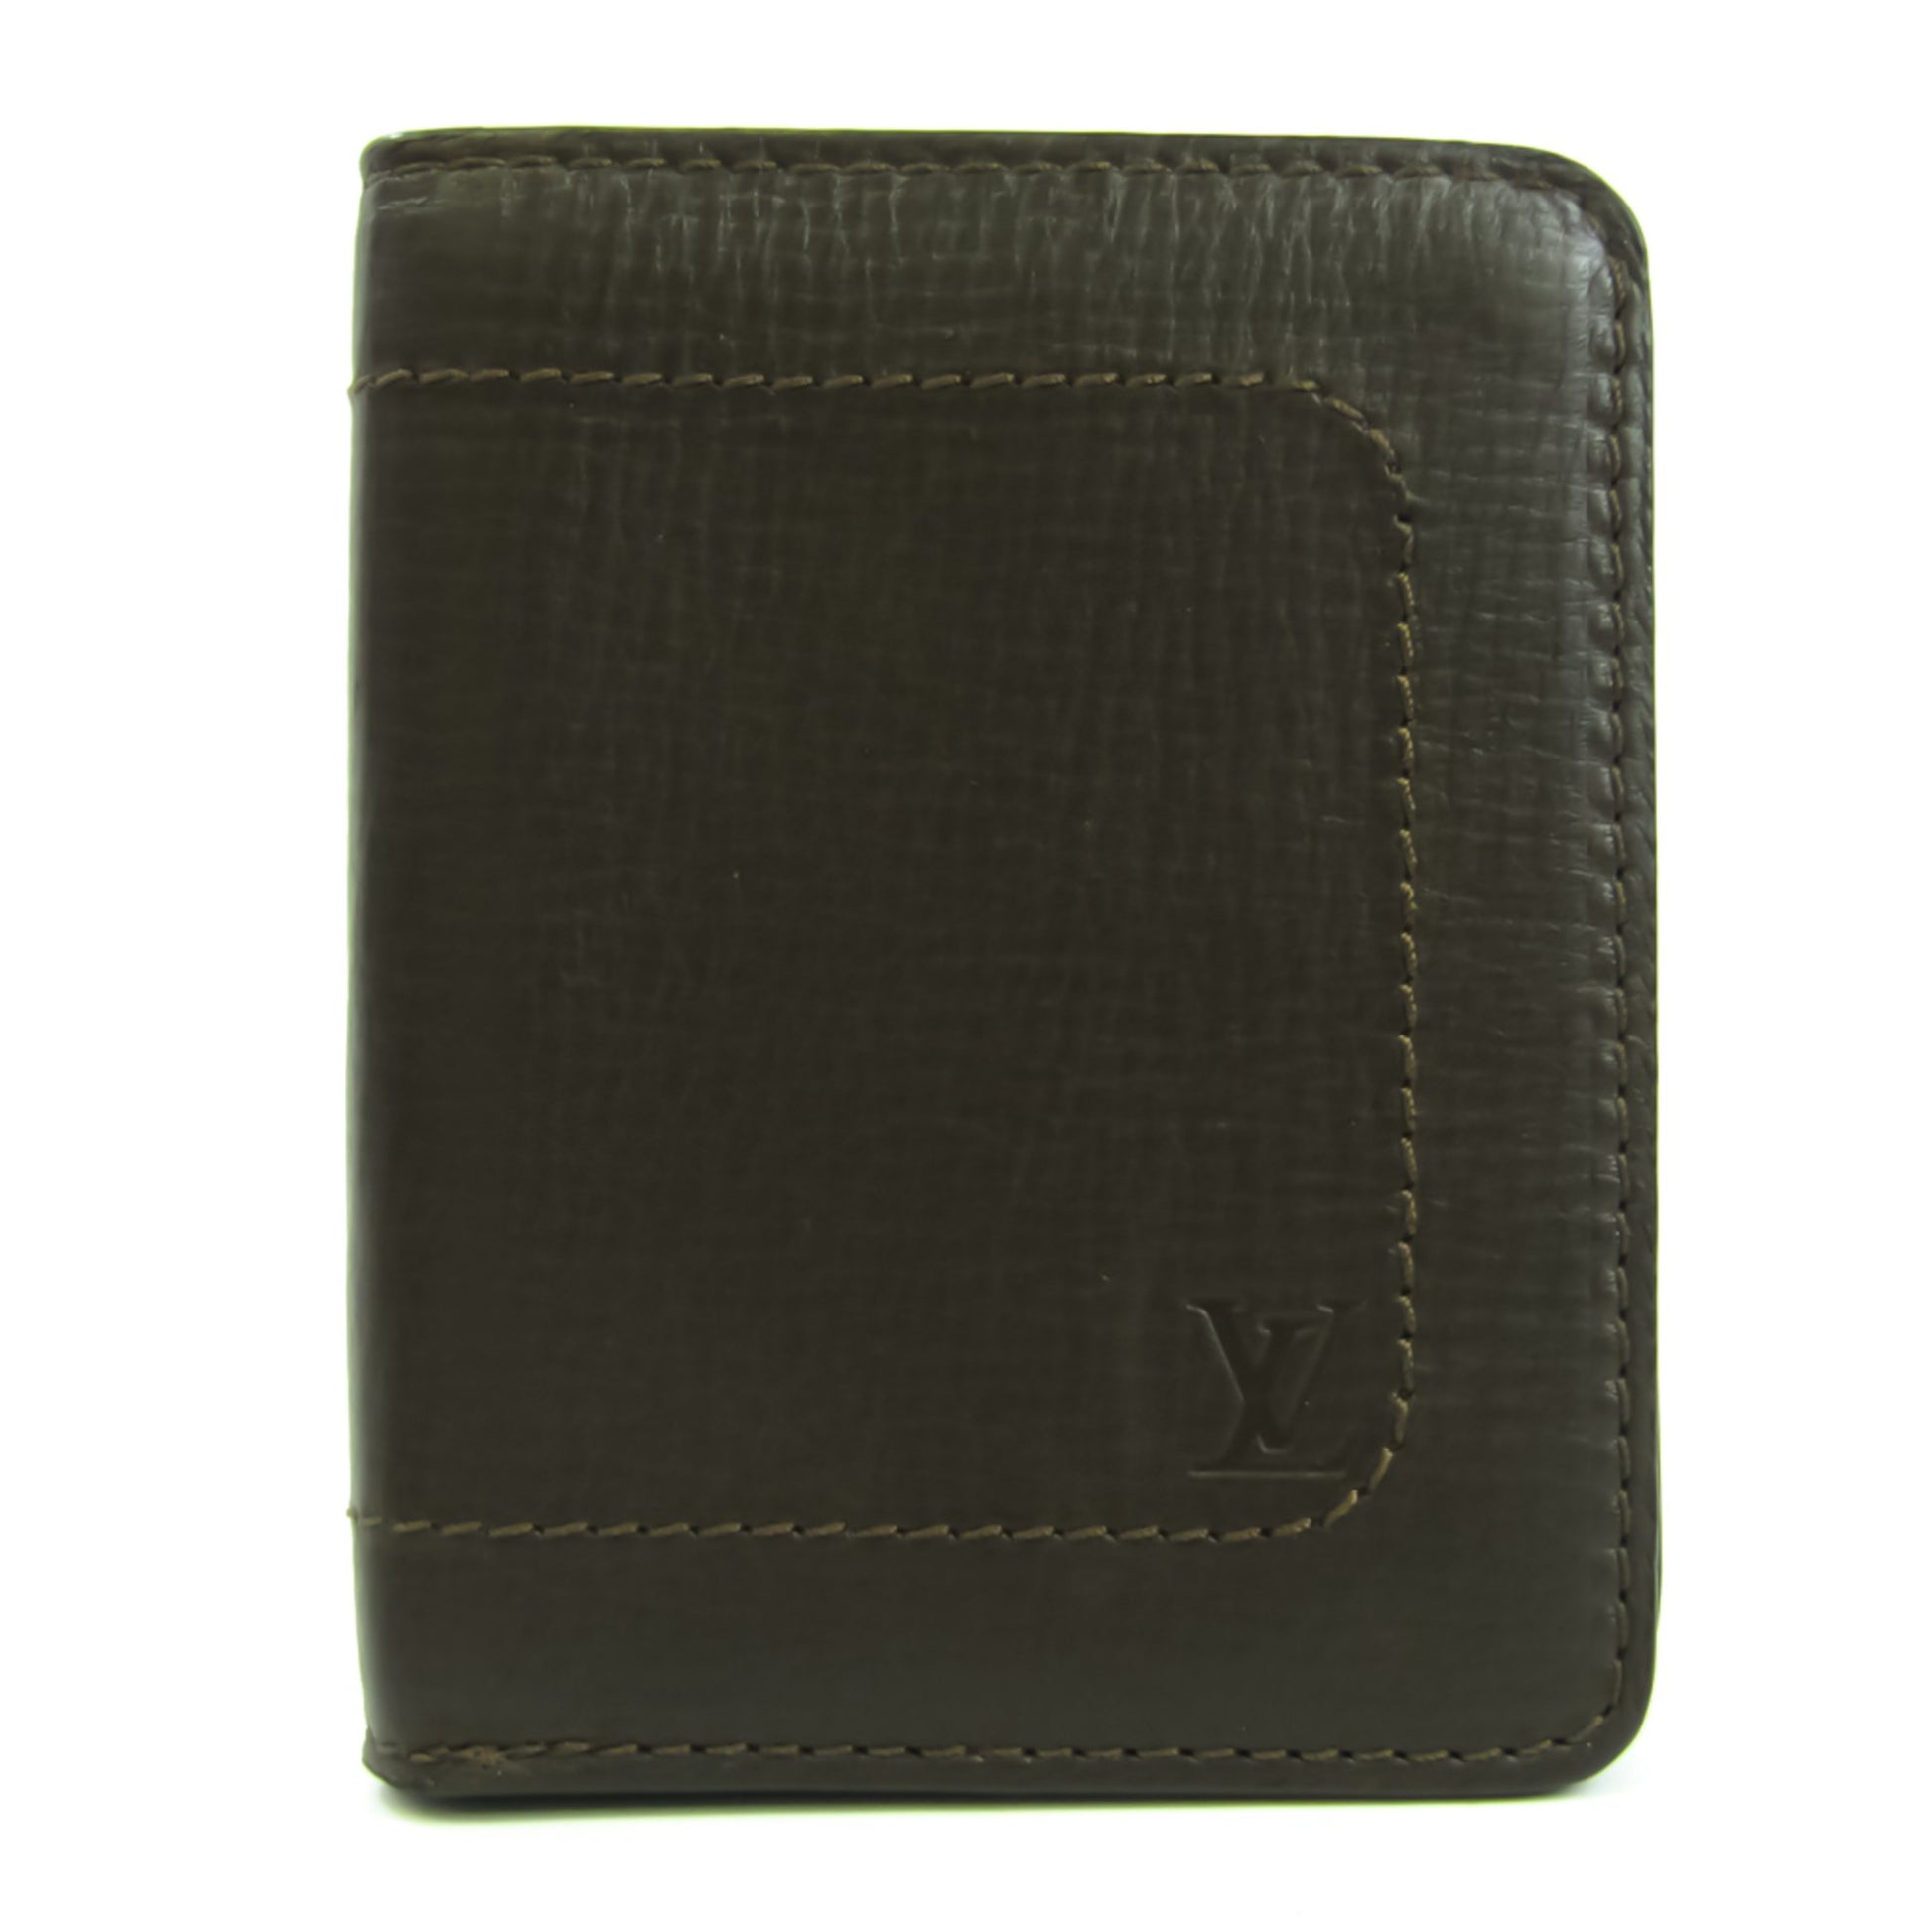 Louis Vuitton Zippy Compact M60425 Men's Leather